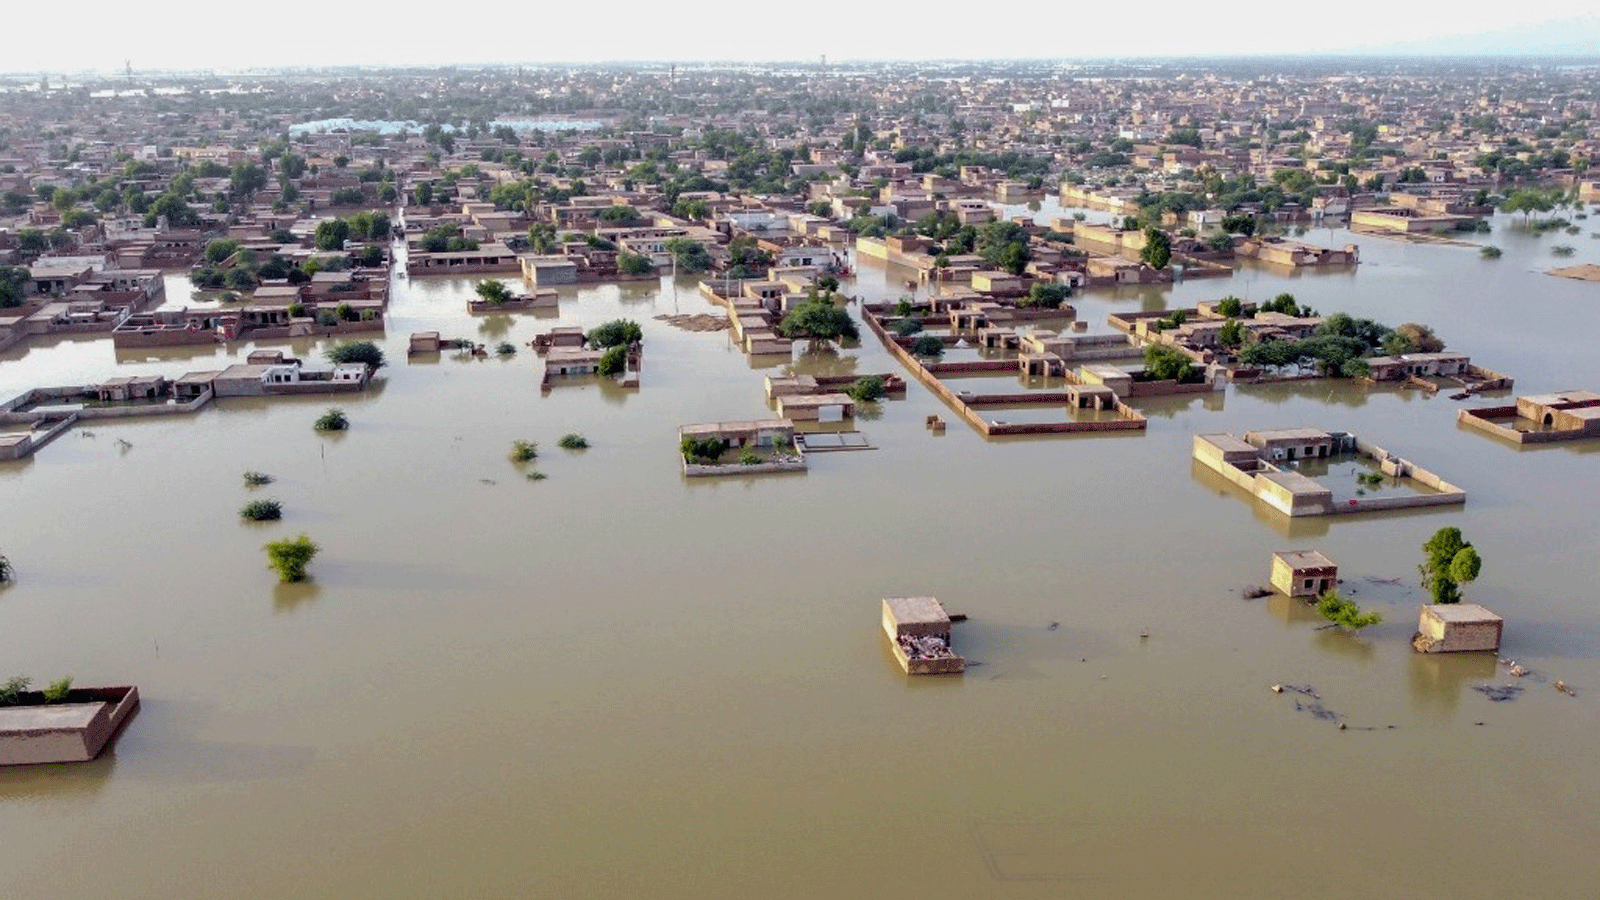  منظر جوي يُظهر منطقة سكنية غارقة في الفيضانات بعد هطول أمطار موسمية غزيرة في إقليم بلوشستان، باكستان، في 29 آب\أغسطس، 2022.